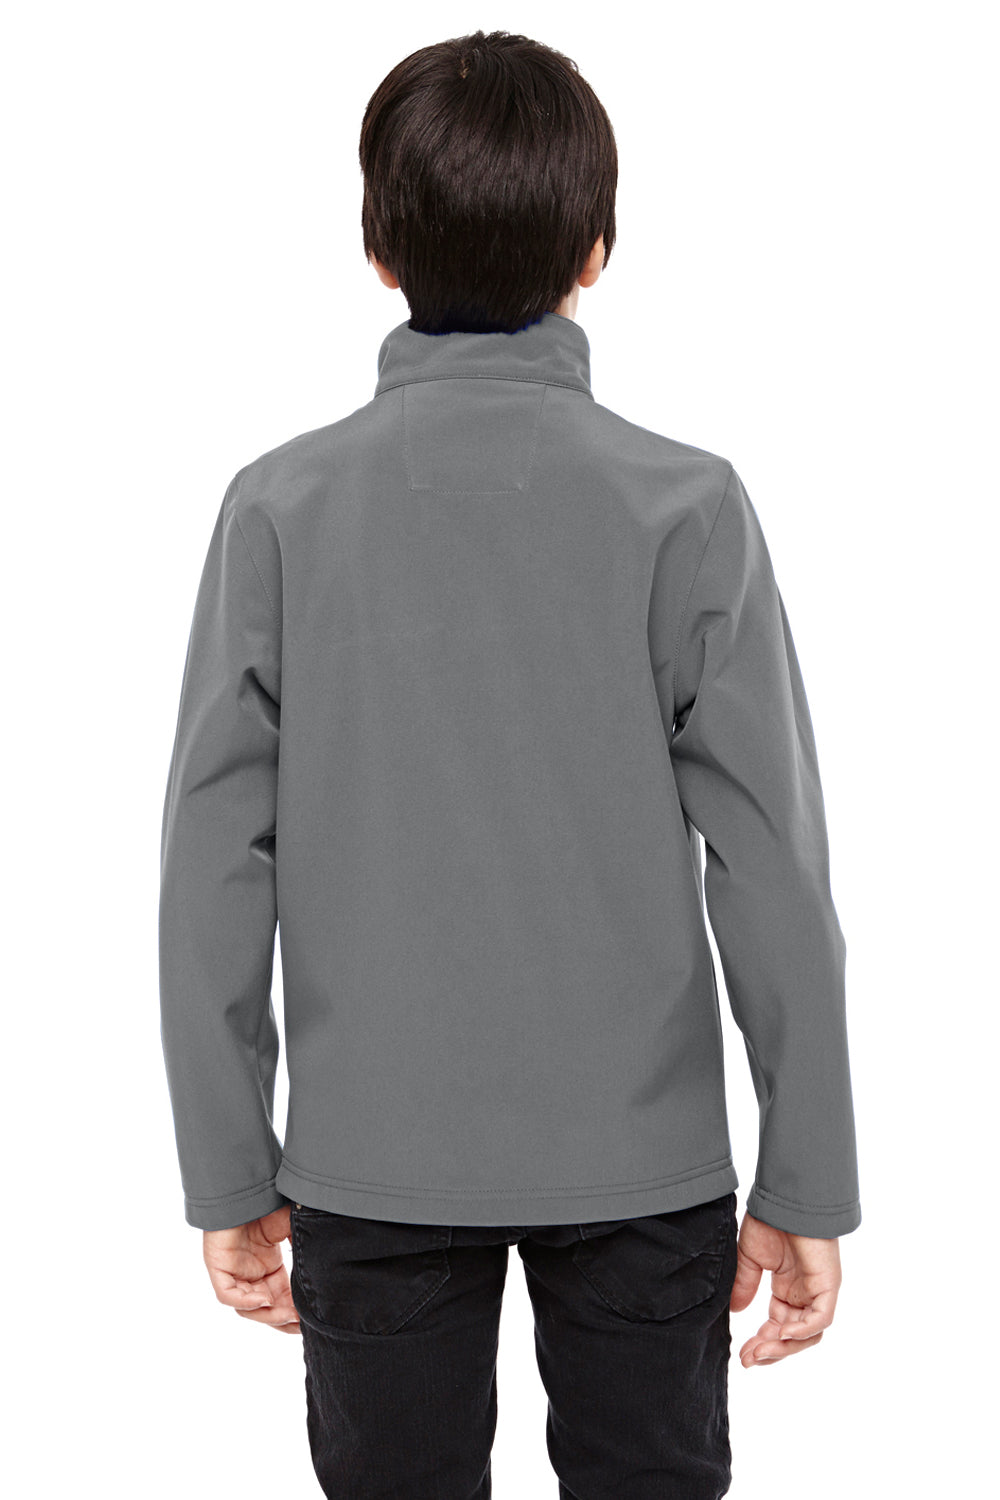 Team 365 TT80Y Youth Leader Waterproof Full Zip Jacket Graphite Grey Back